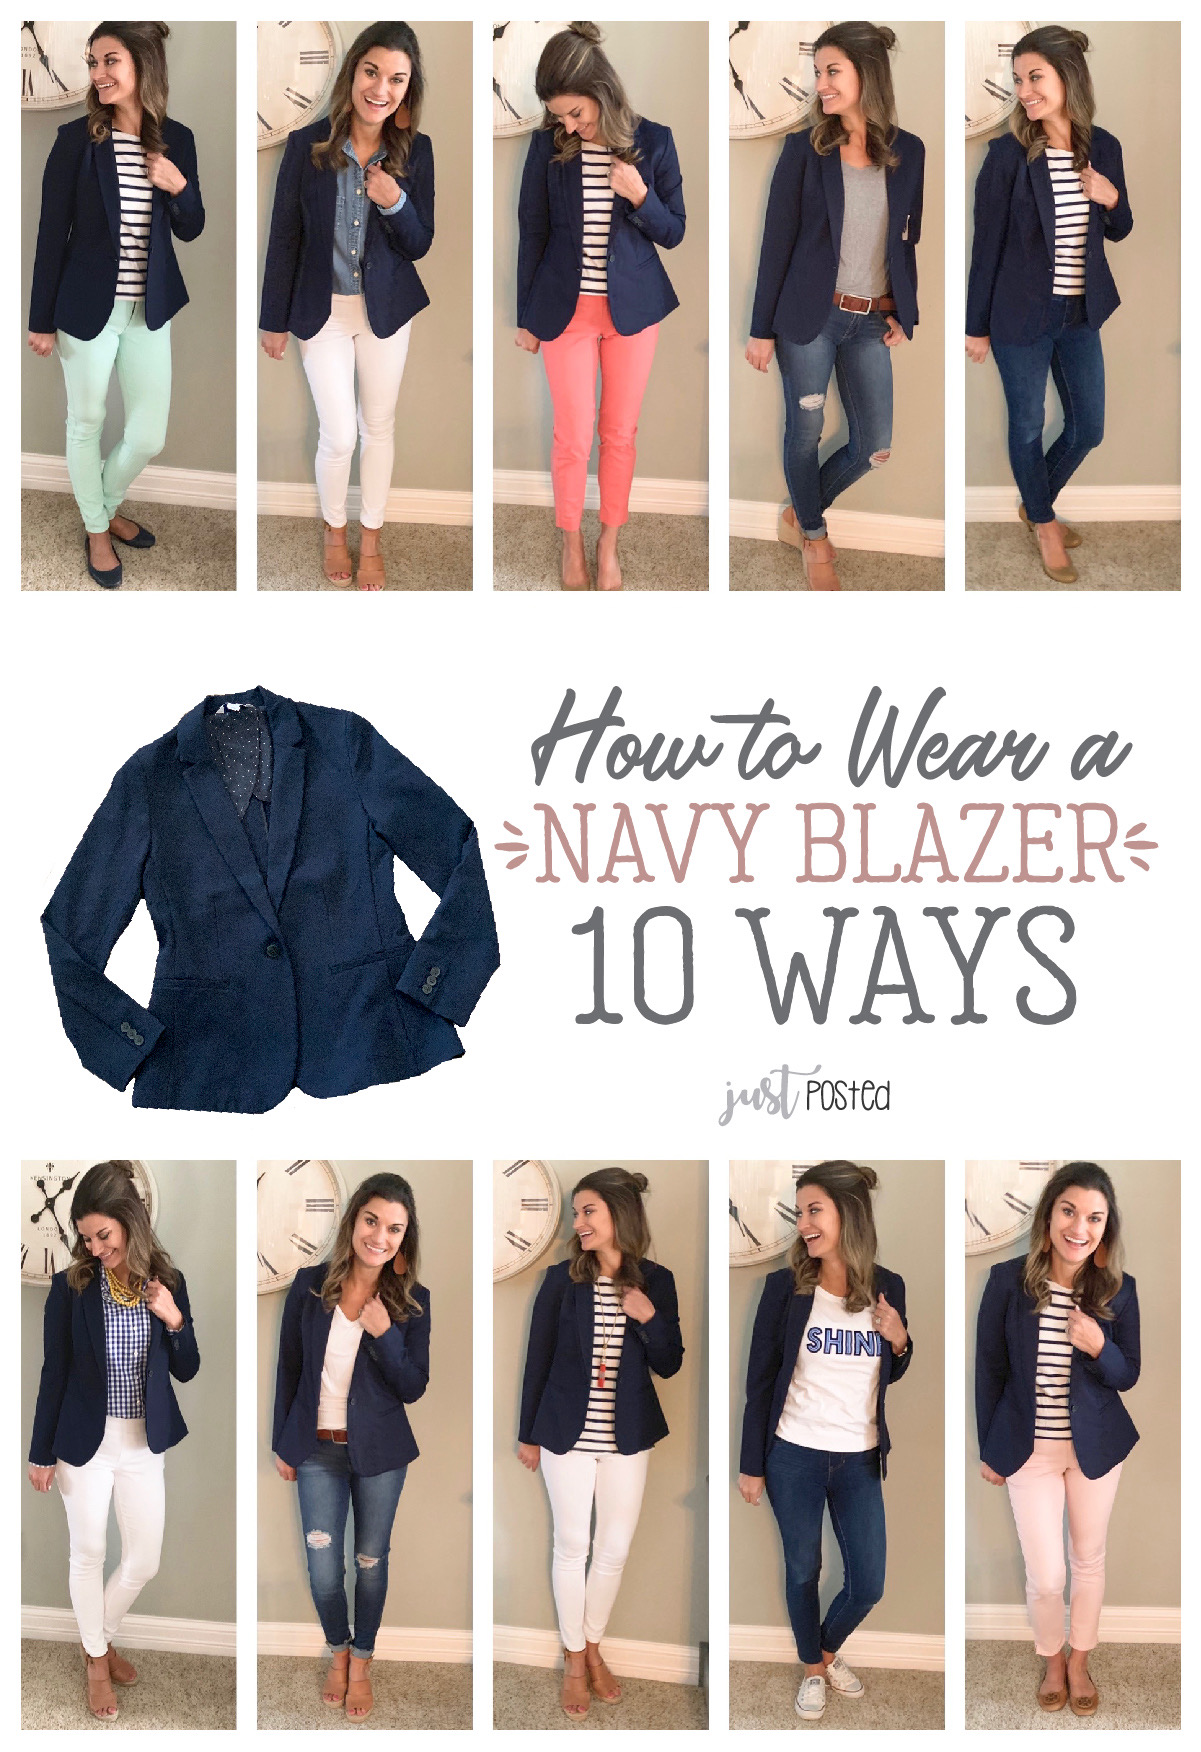 One Navy Blazer Ten Ways Just Posted